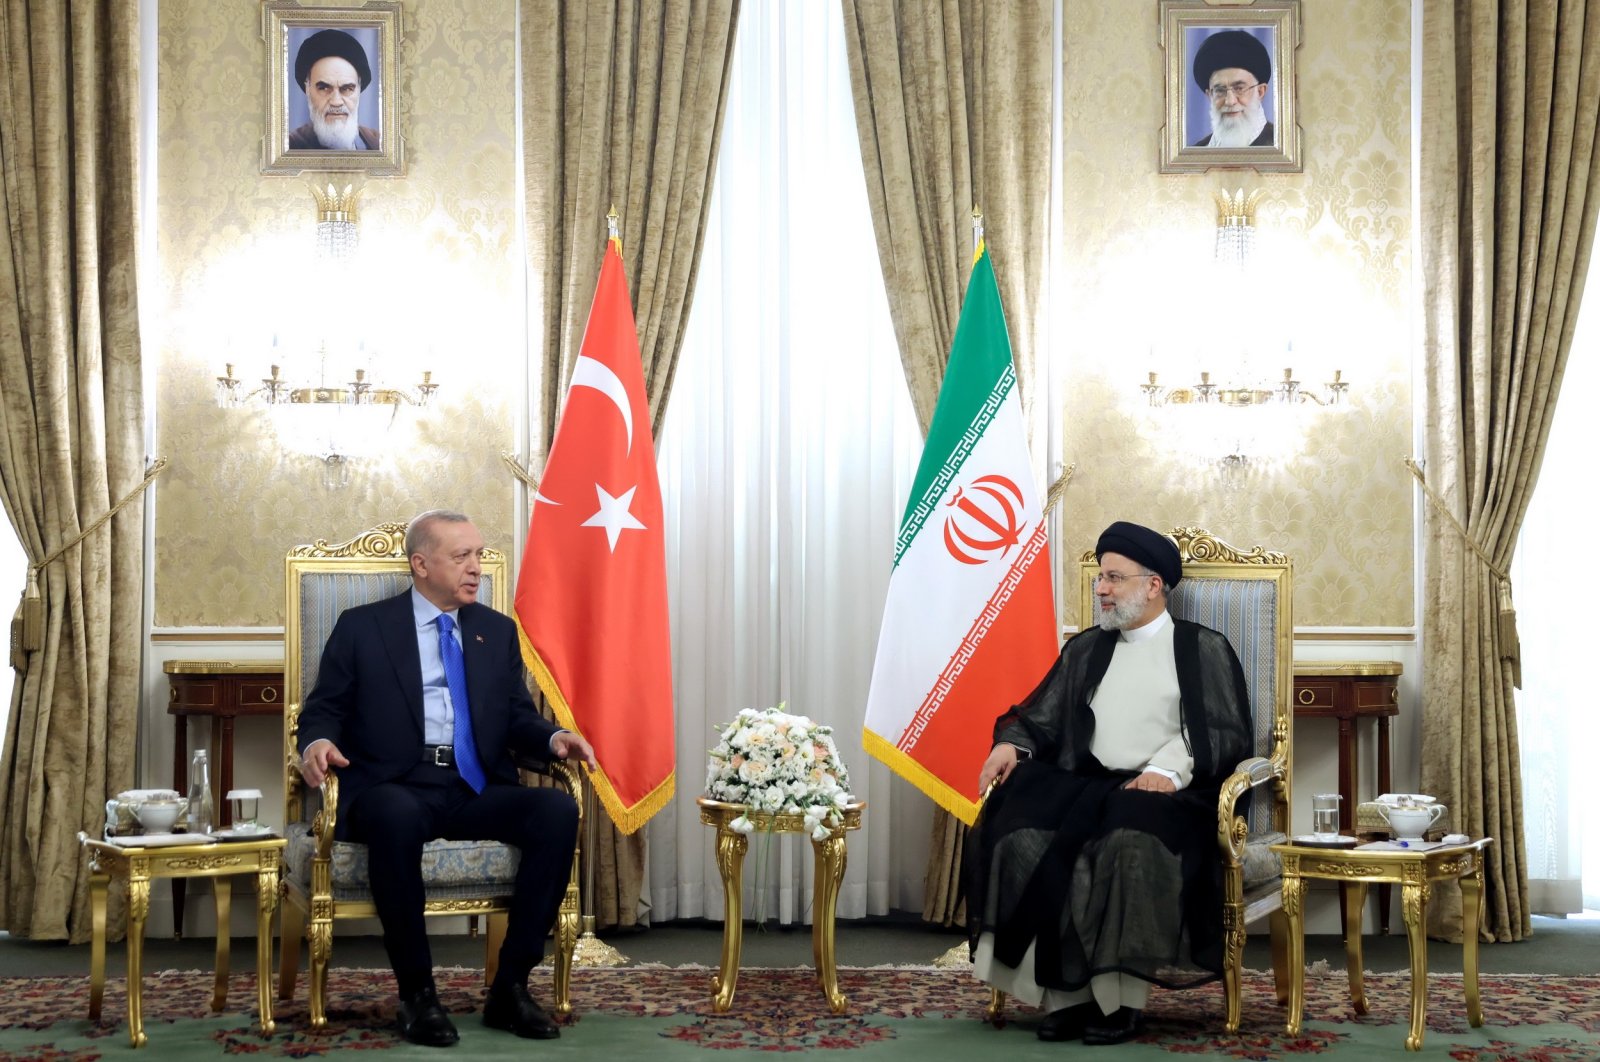 Presidentti Recep Tayyip Erdoğan (L) keskustelee Iranin presidentin Ebrahim Raisin kanssa kokouksessa Teheranissa, Iranissa, 19.7.2022. (EPA-kuva)